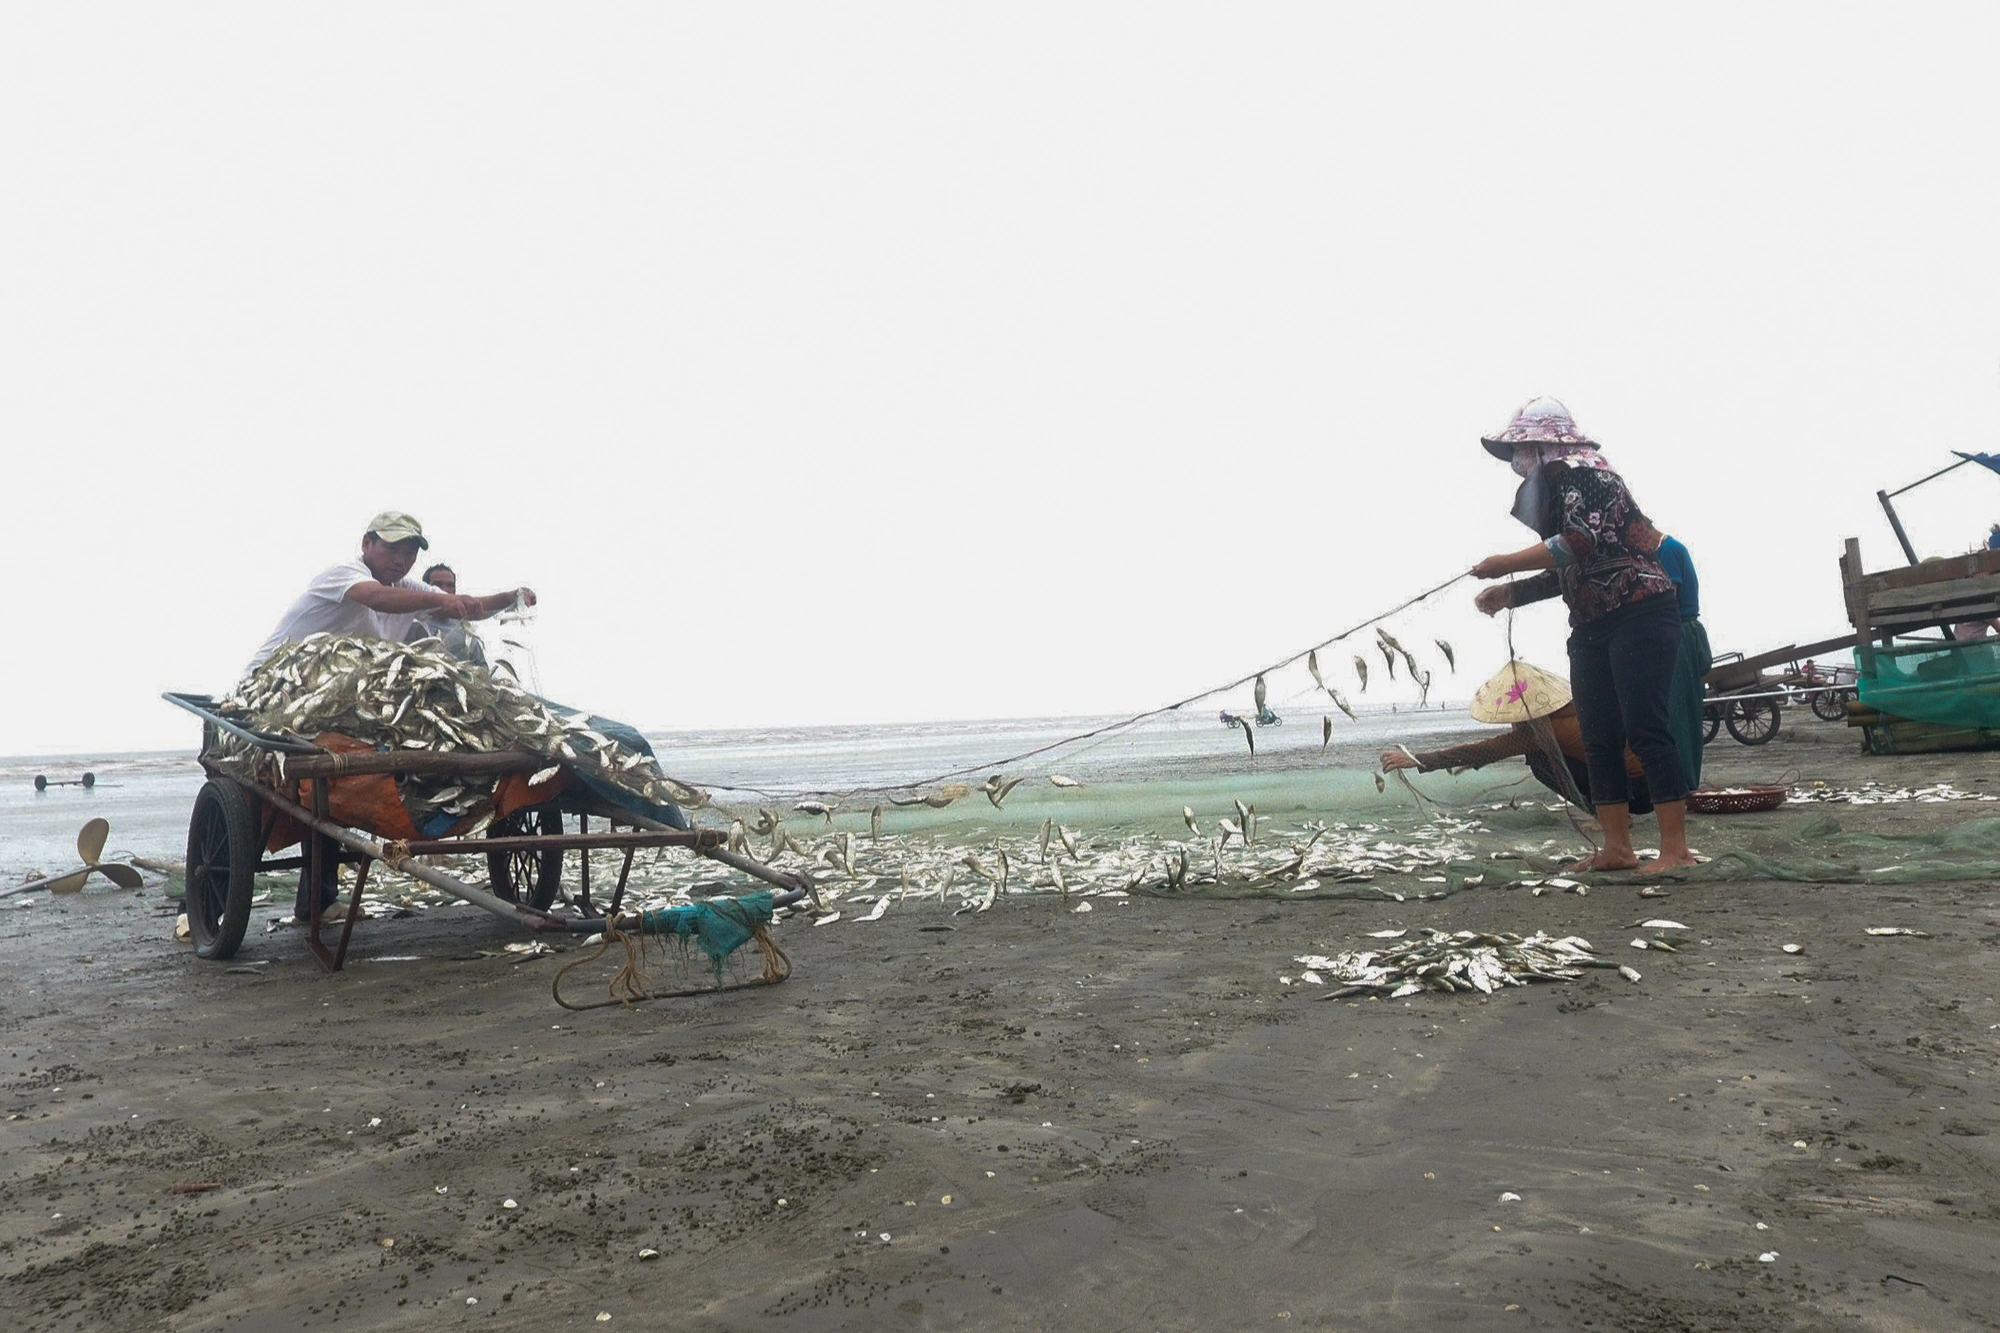 View - Phụ nữ làng biển mướt mồ hôi nướng cá bên bếp lửa giữa trưa 39 độ C | Báo Dân trí